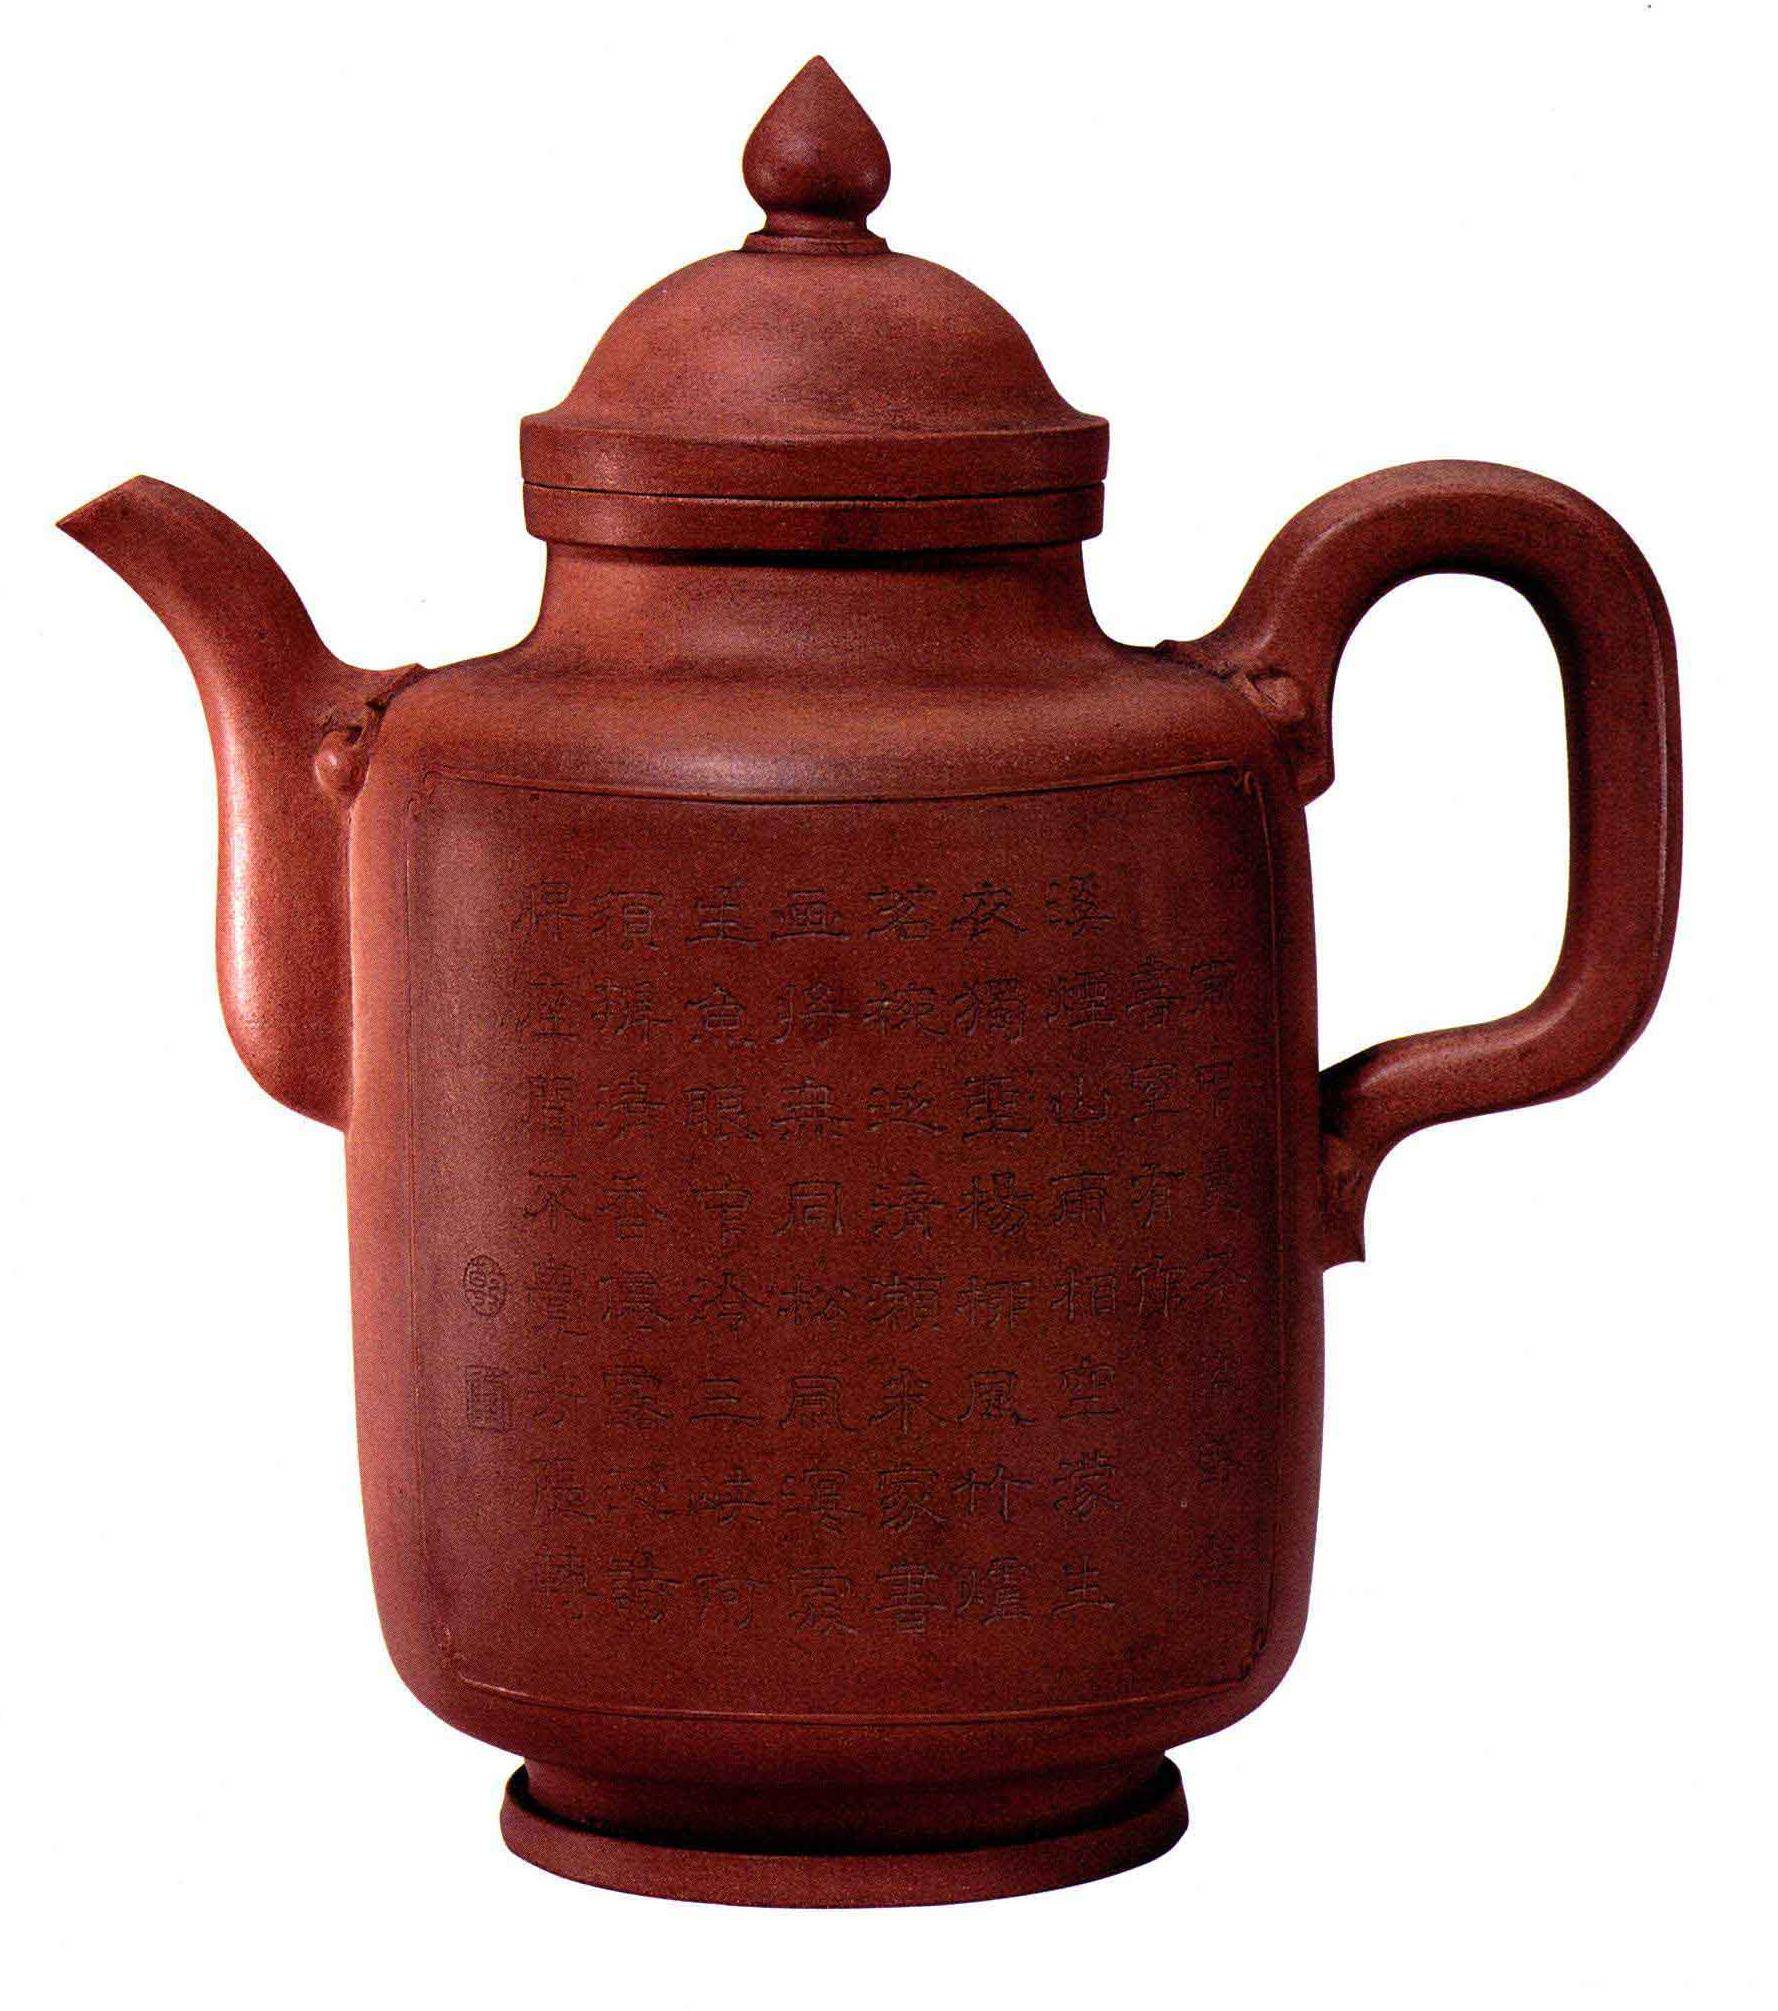 原创中国陶瓷文化有宁静优雅之美感的宜兴窑紫砂茶壶乾隆皇帝御用